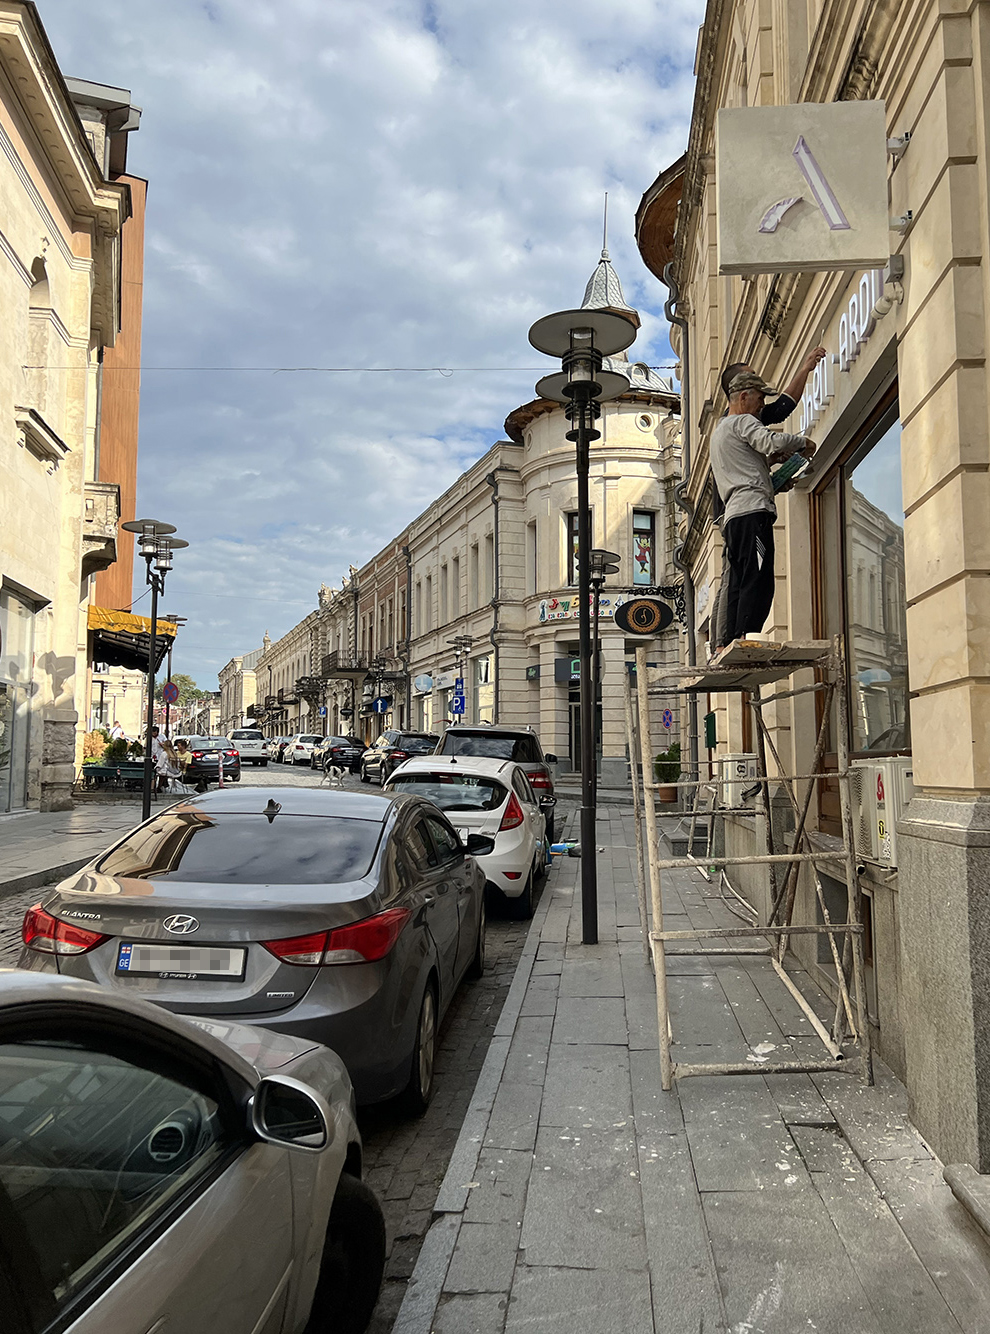 Улица Пушкина — одна из самых оживленных в Старом городе. Здесь я часто видела путешественников и туристические группы с гидами